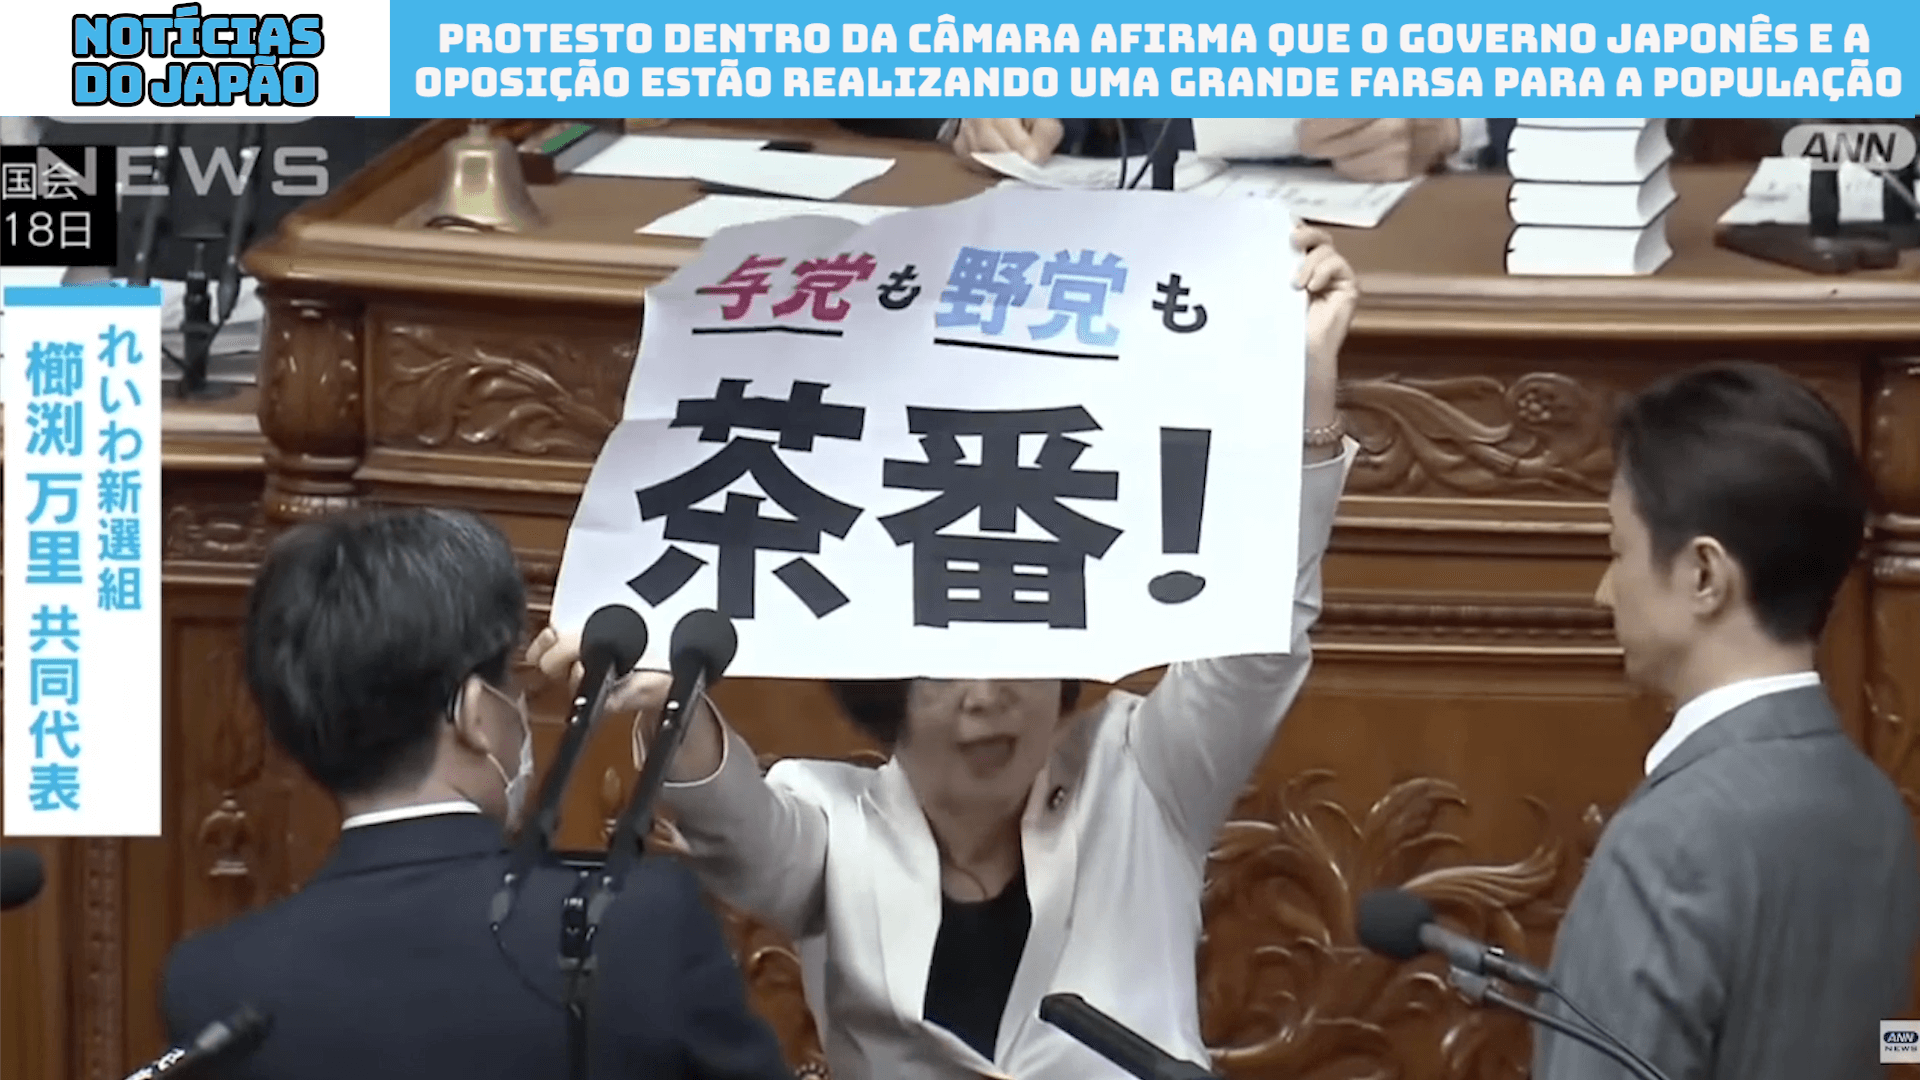 Protesto dentro da Câmara afirma que o Governo japonês e a oposição estão realizando uma grande farsa para a população